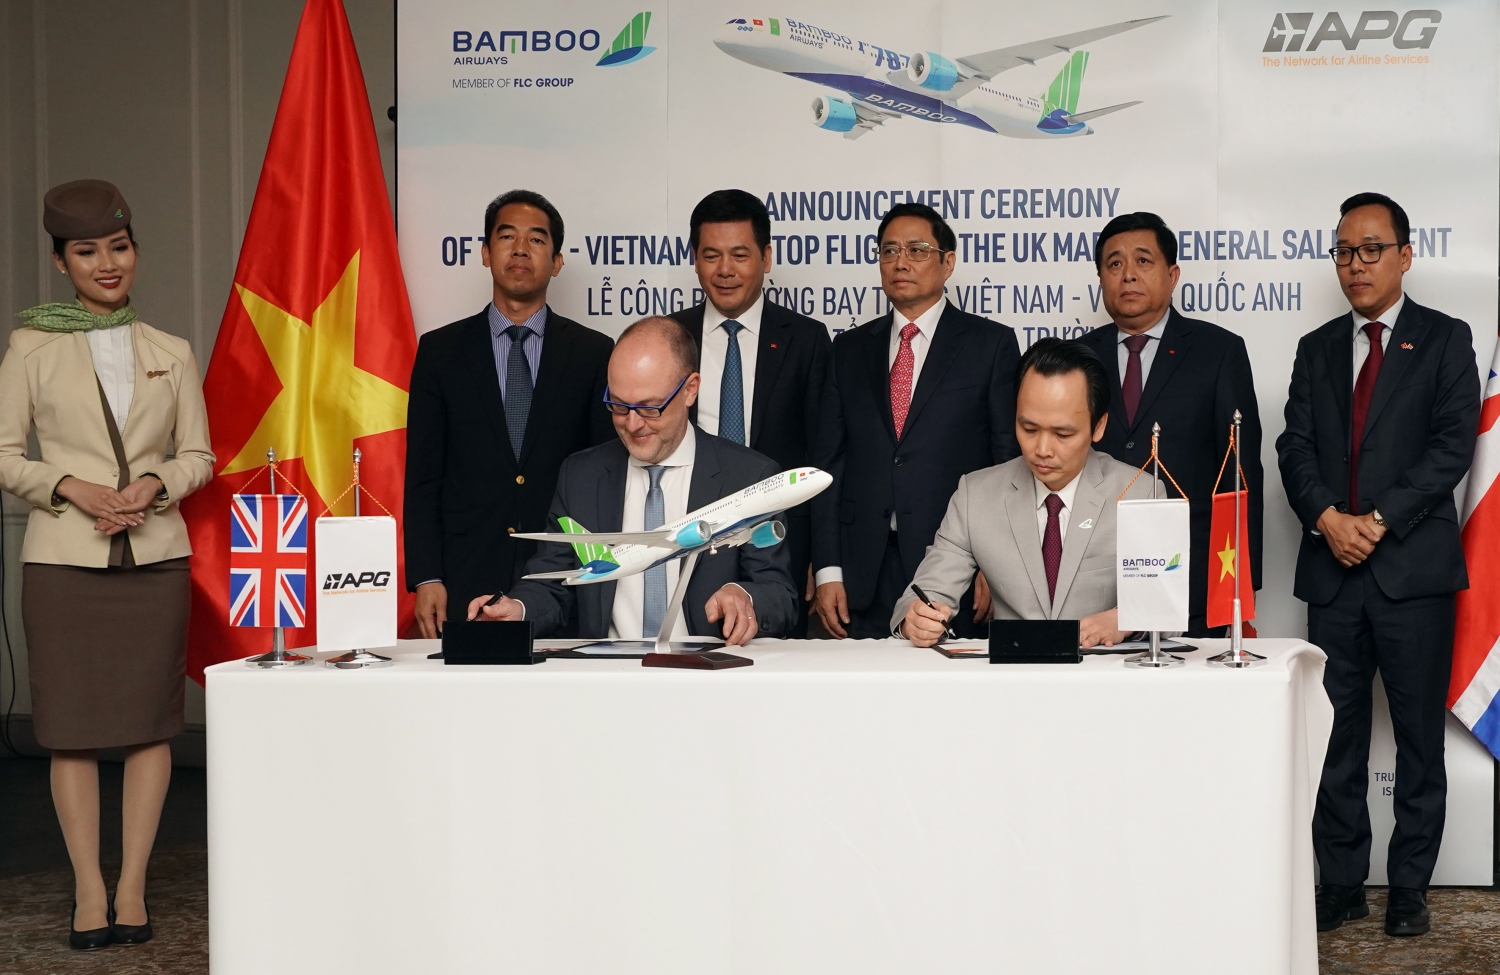 Bamboo Airways công bố đường bay thẳng Việt - Anh và ra mắt Tổng đại lý tại Anh dưới sự chứng kiến của Thủ tướng Chính phủ